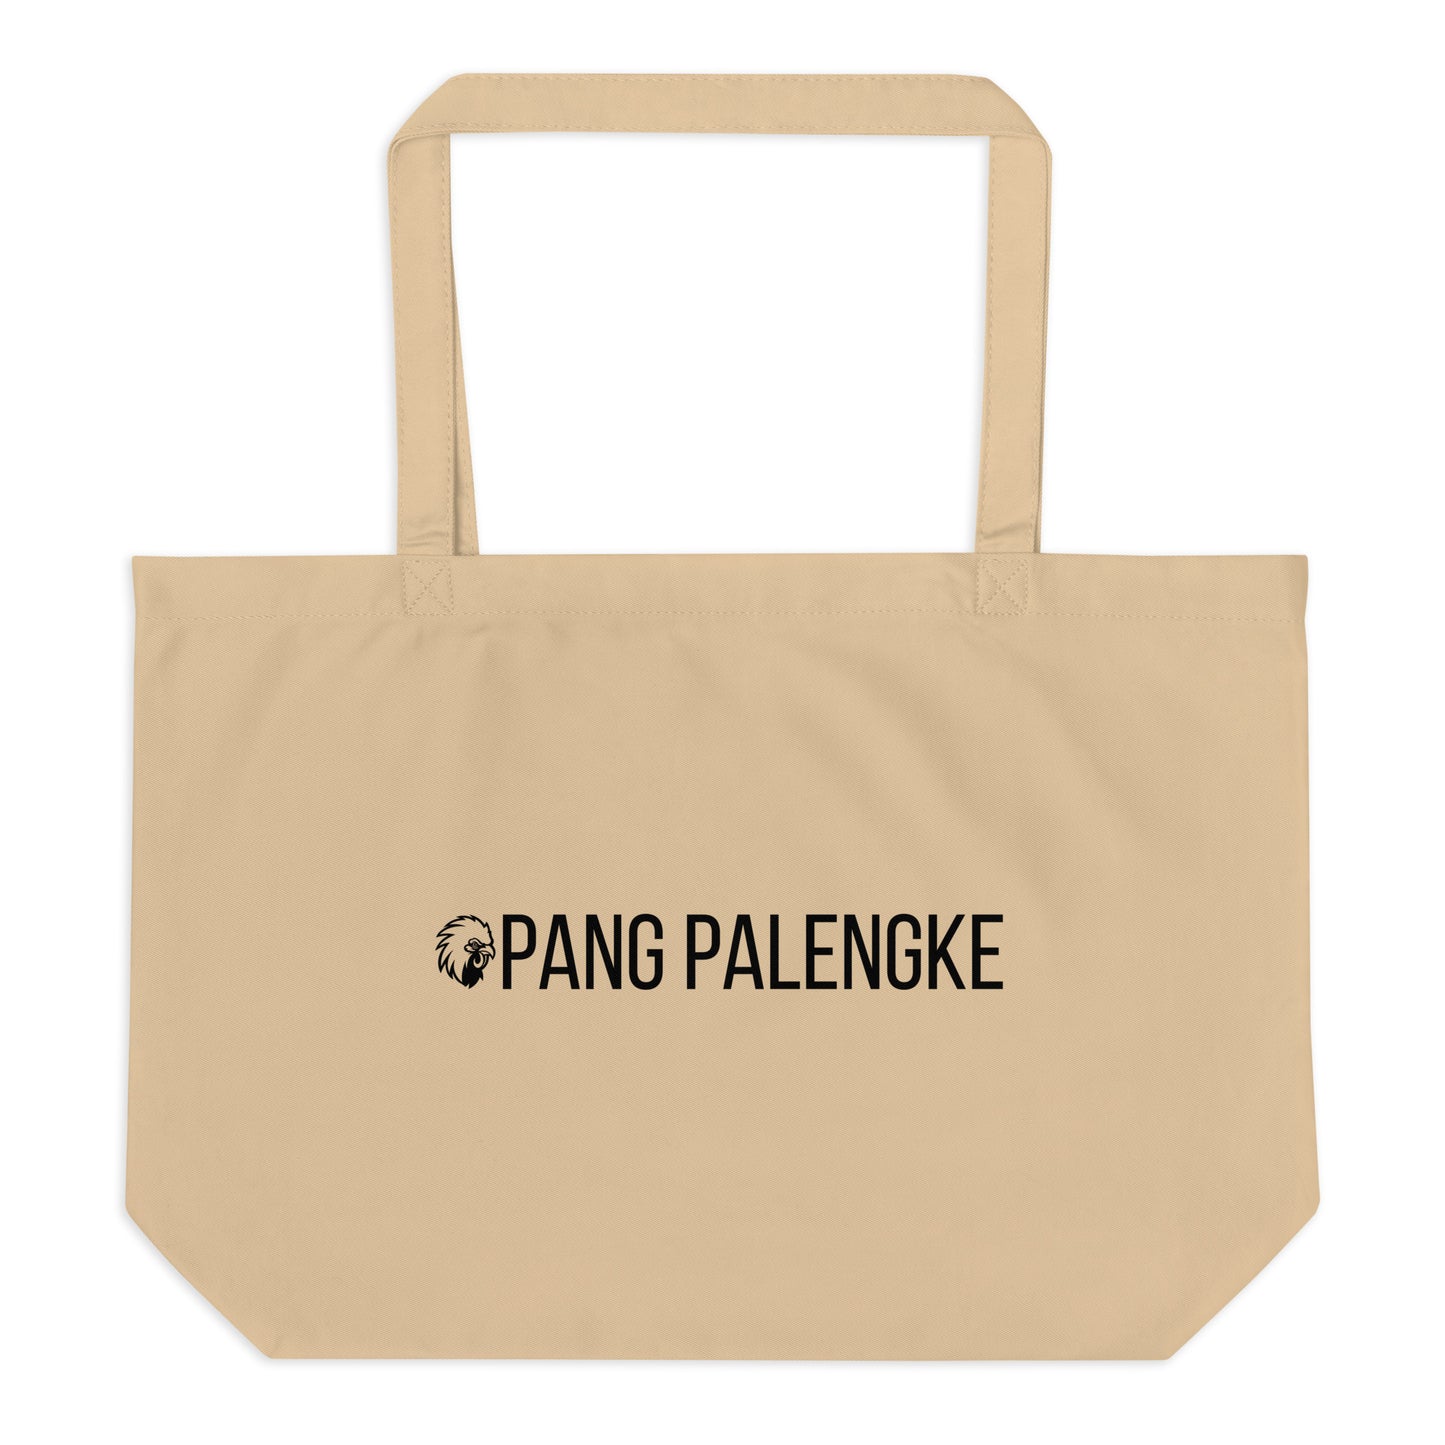 Large Tote Bag "Pang Palengke"